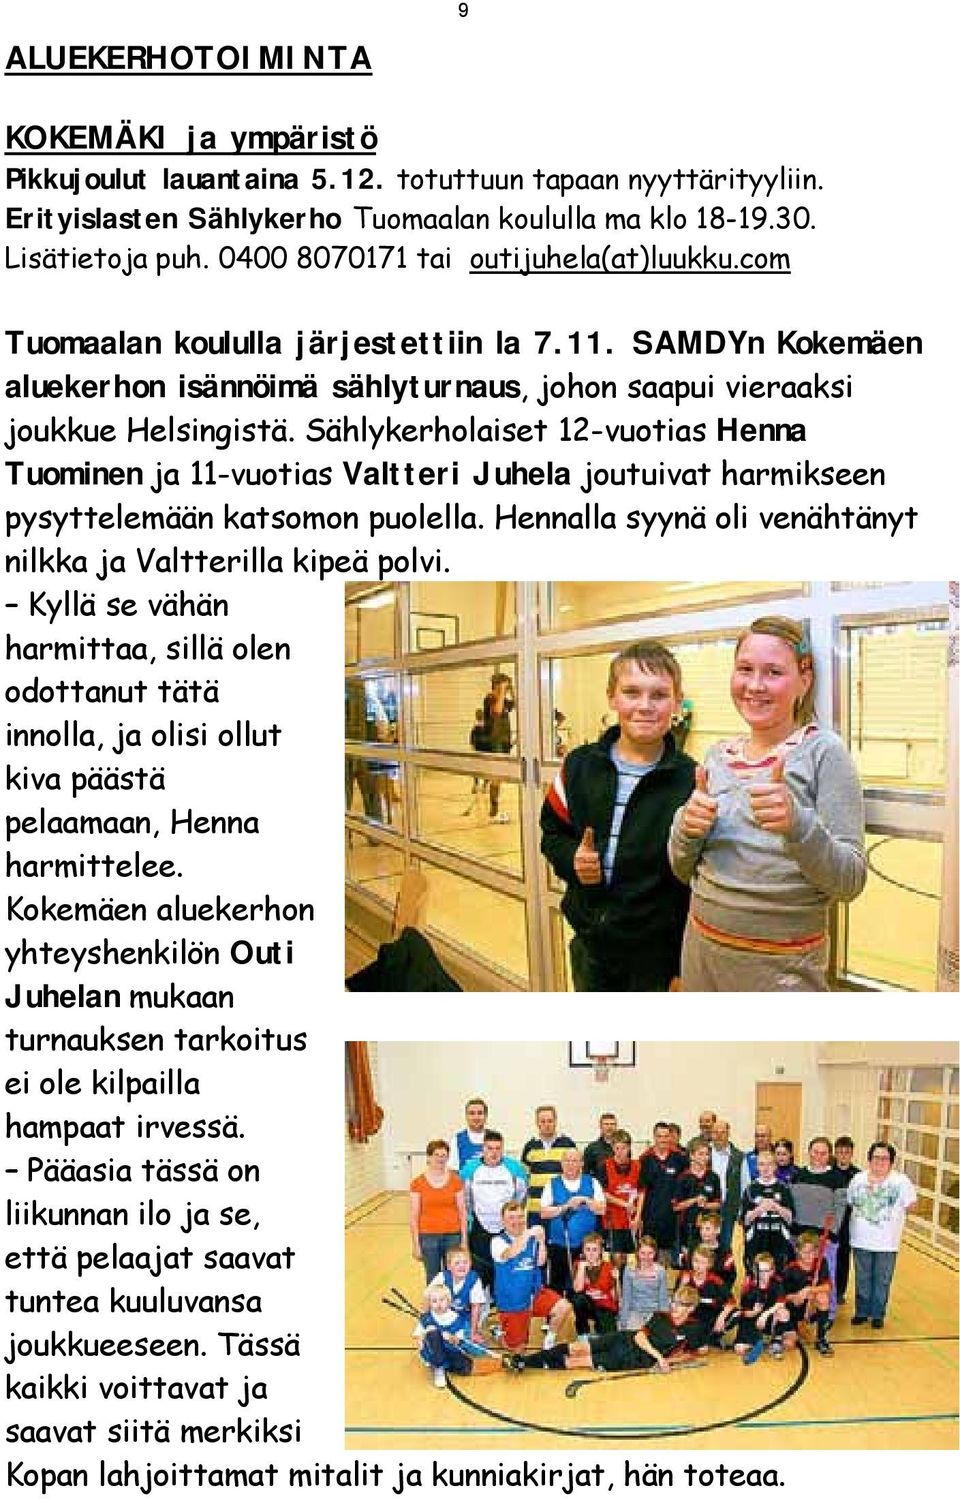 Sählykerholaiset 12-vuotias Henna Tuominen ja 11-vuotias Valtteri Juhela joutuivat harmikseen pysyttelemään katsomon puolella. Hennalla syynä oli venähtänyt nilkka ja Valtterilla kipeä polvi.